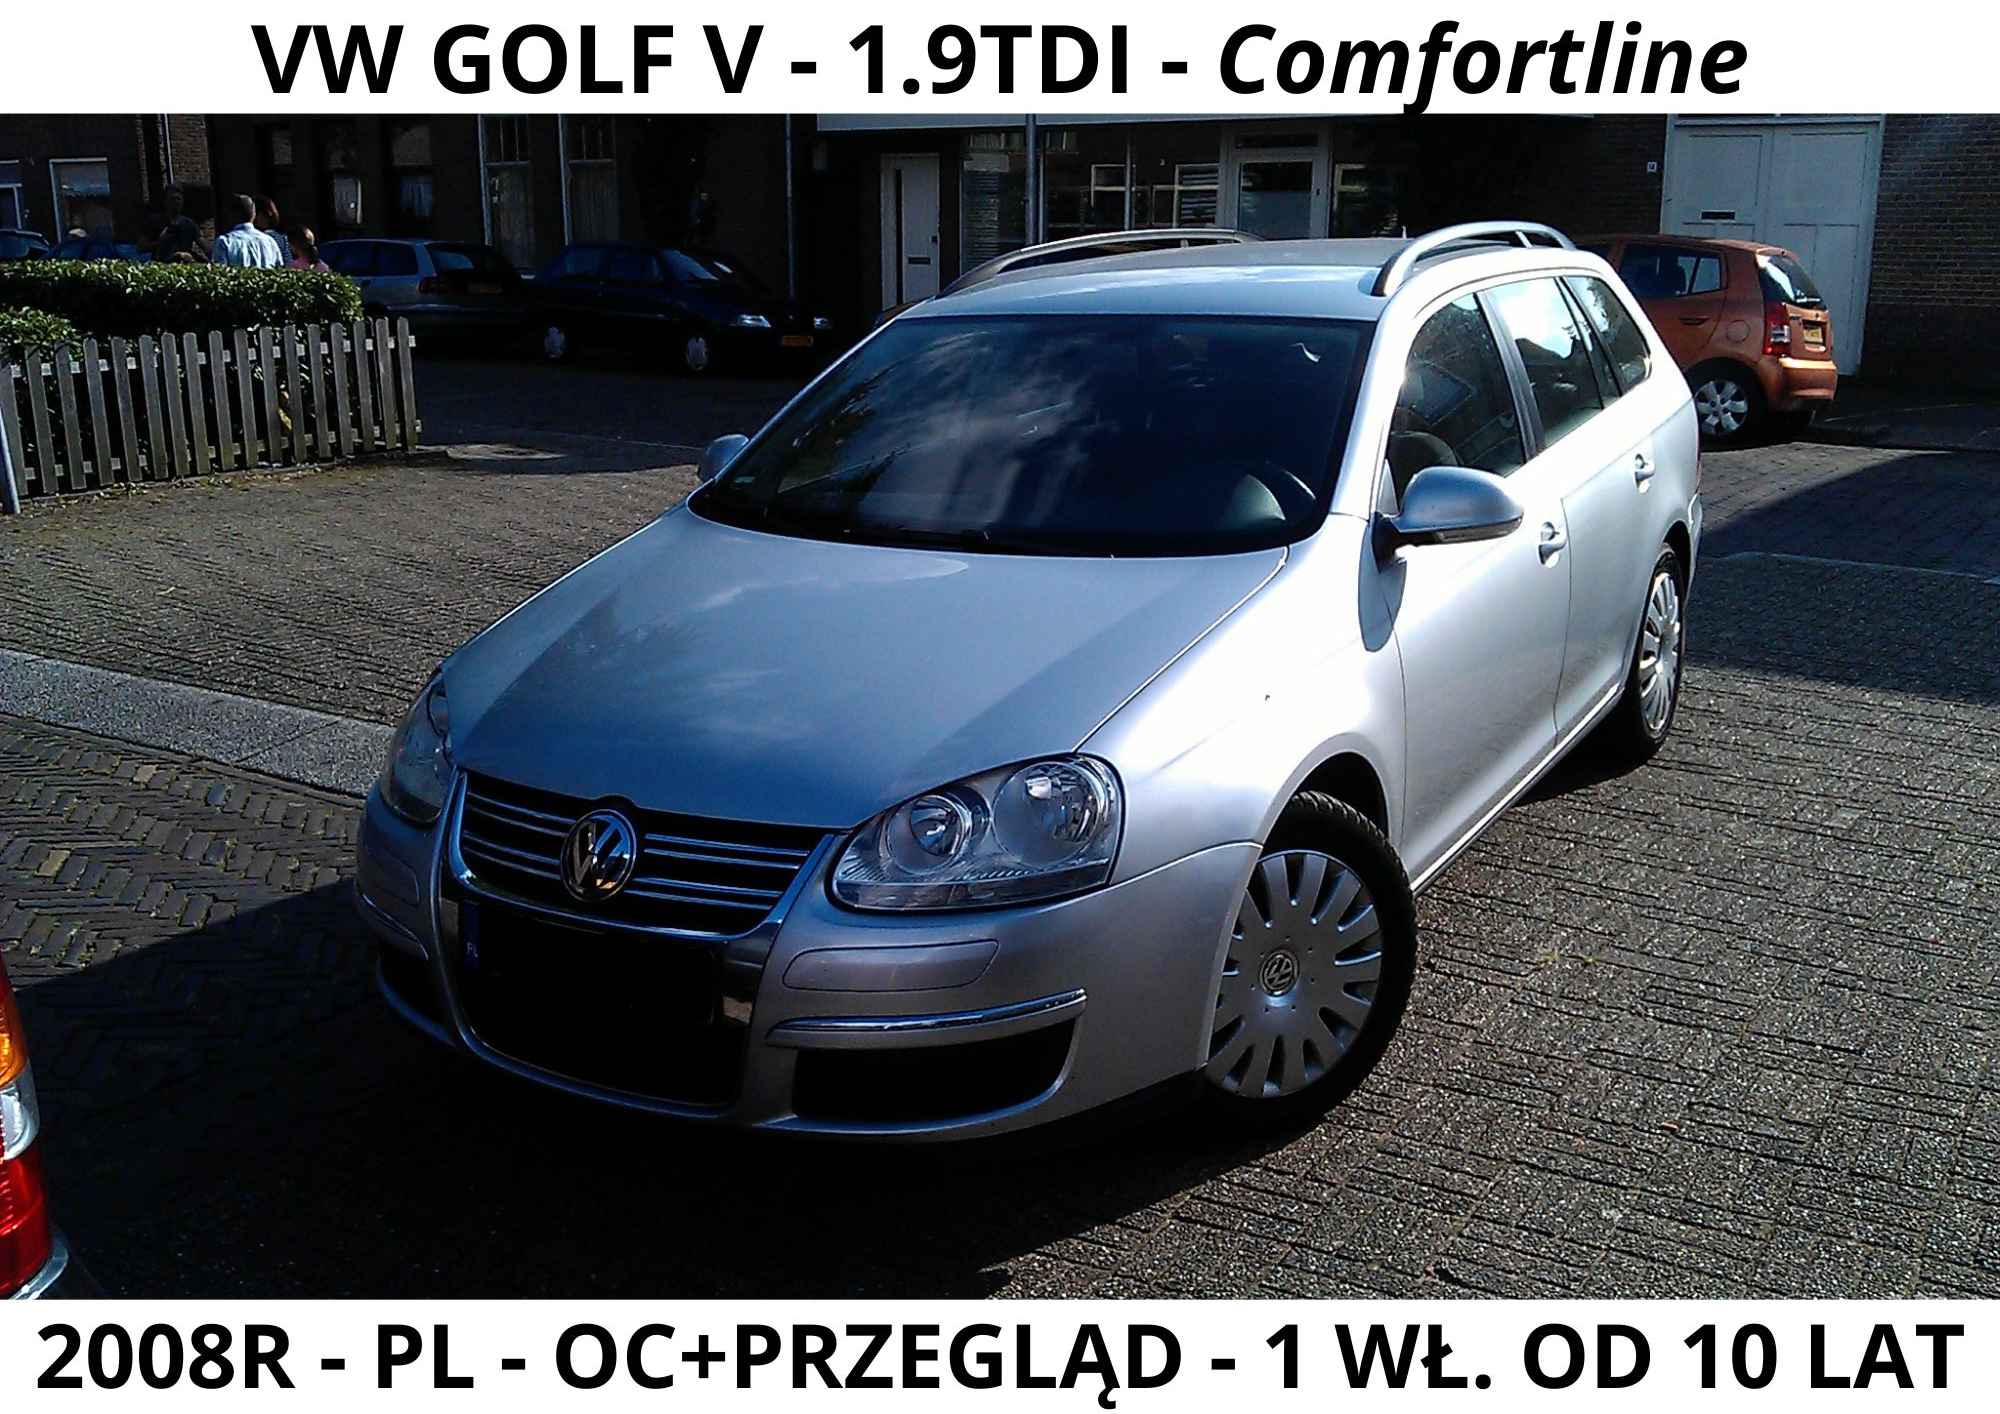 VW GOLF V 1.9 tdi Comfortline 1 wł. od 10 lat Lublin - zdjęcie 1